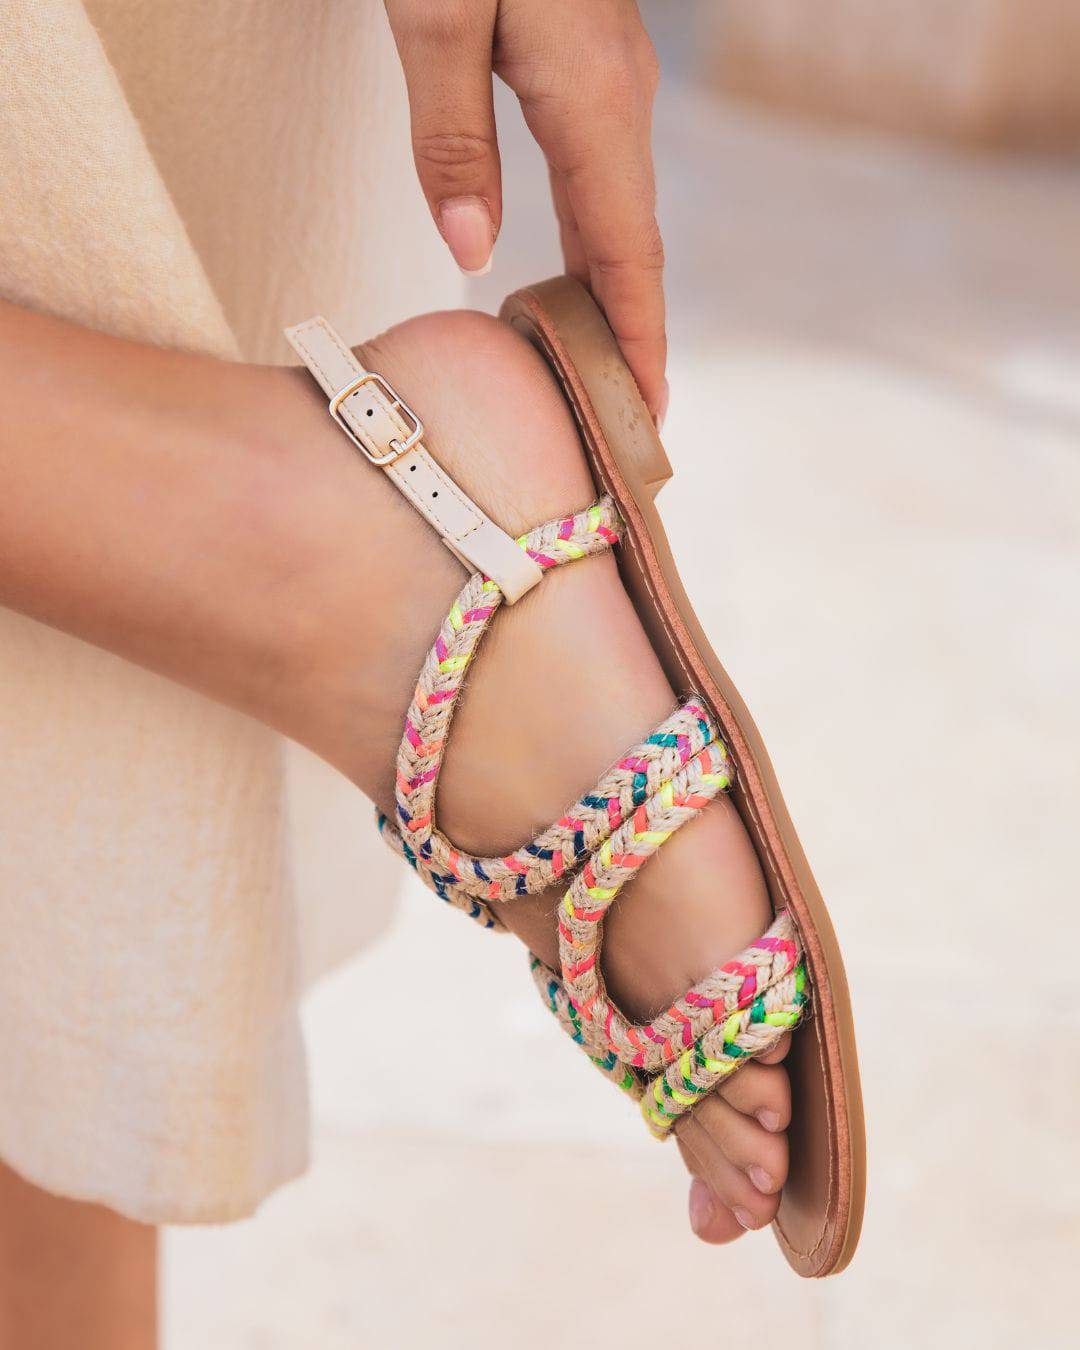 Sandale femme plate multicolore bohème - Audrey - Casualmode.de